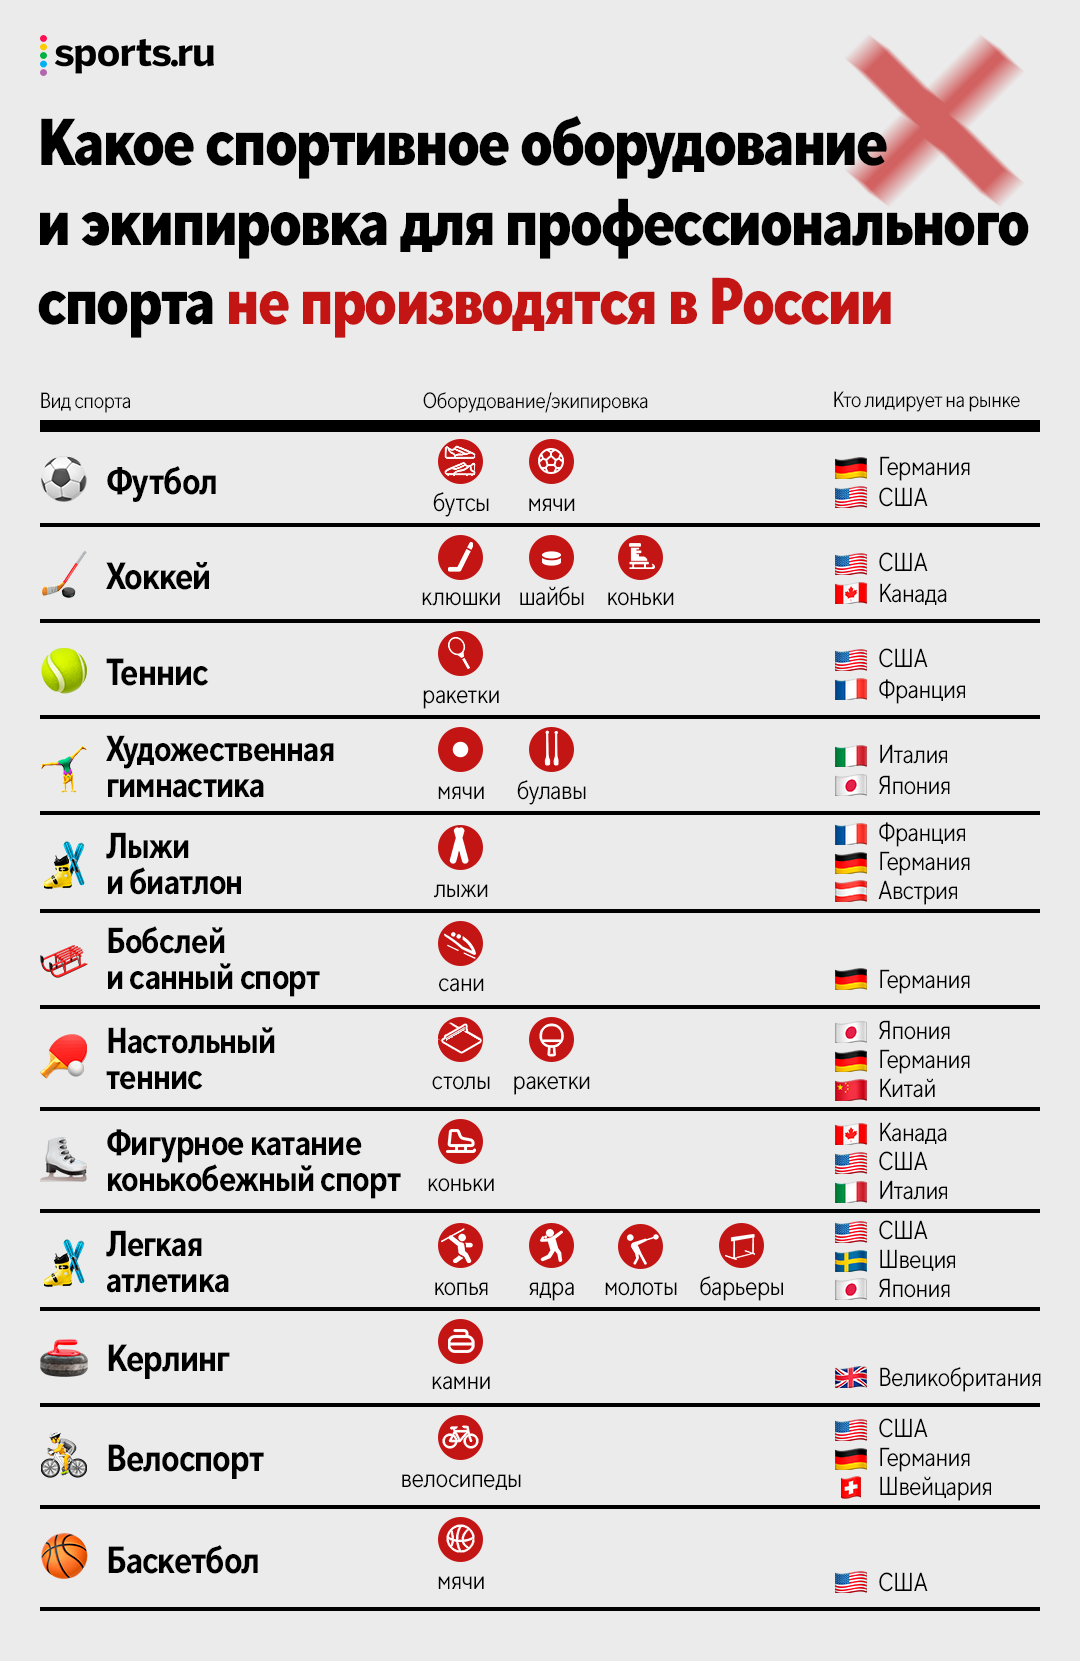 Российский спорт без иностранных товаров – утопия. Исследование Sports.ru